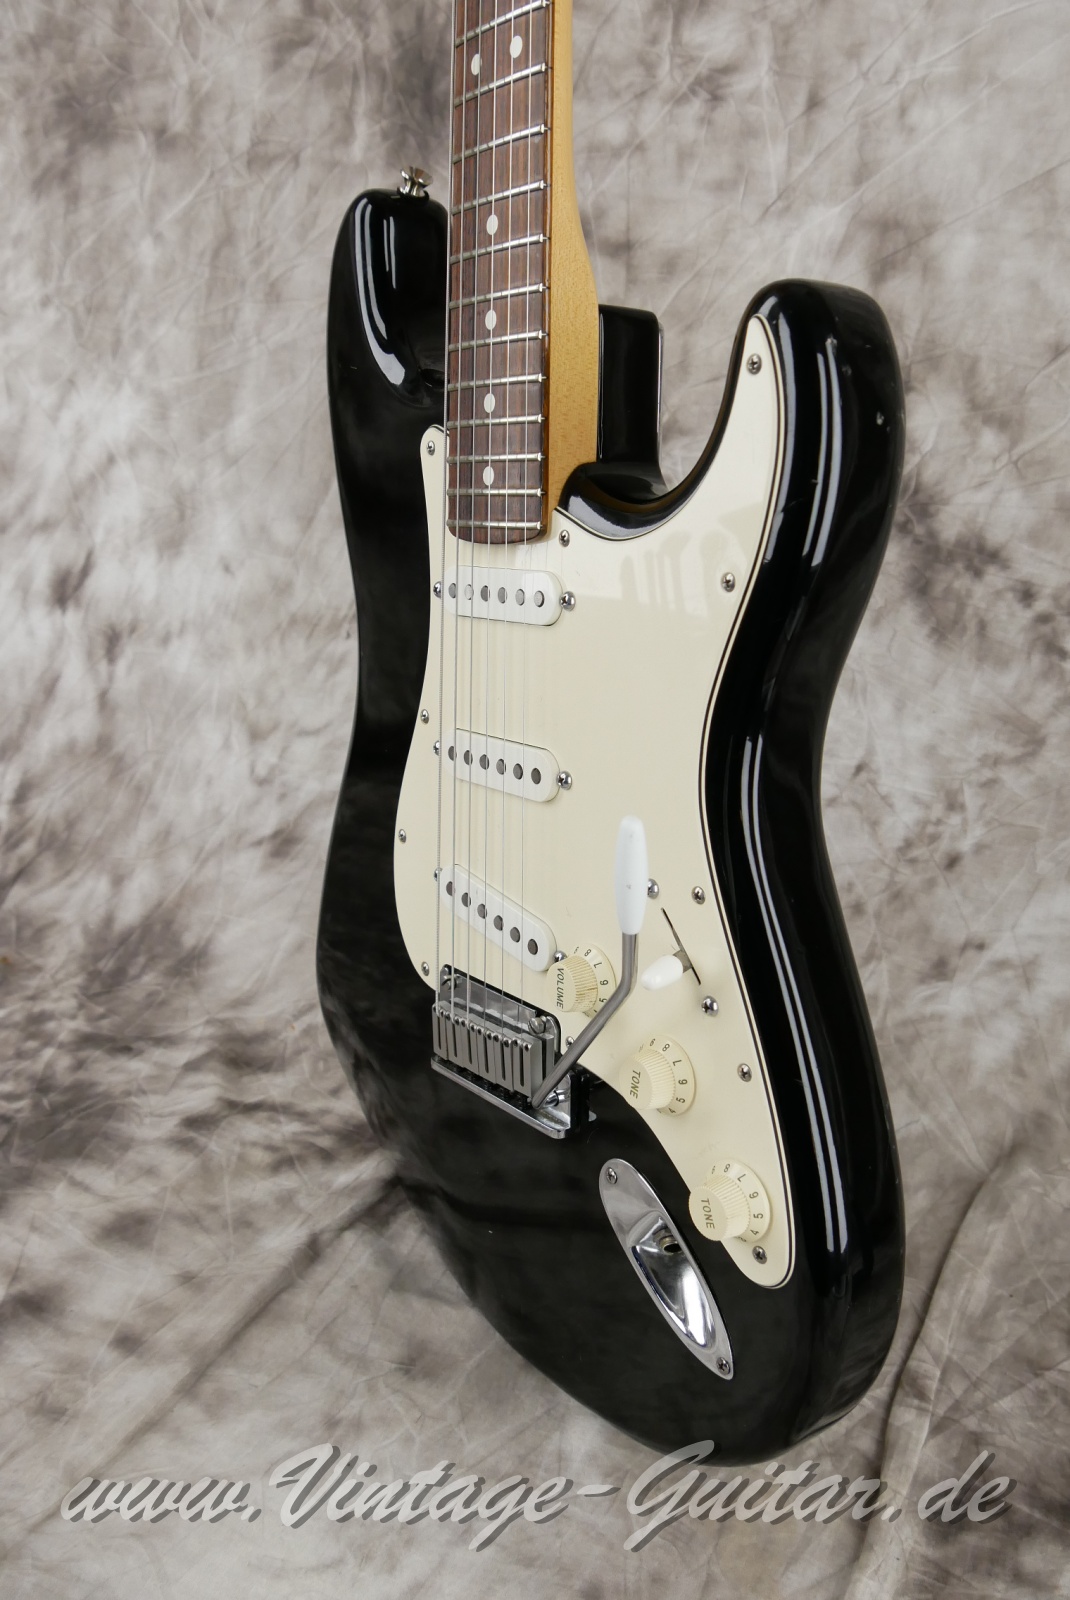 Fender-Stratocaster-American-Standard-1987-black-006.JPG